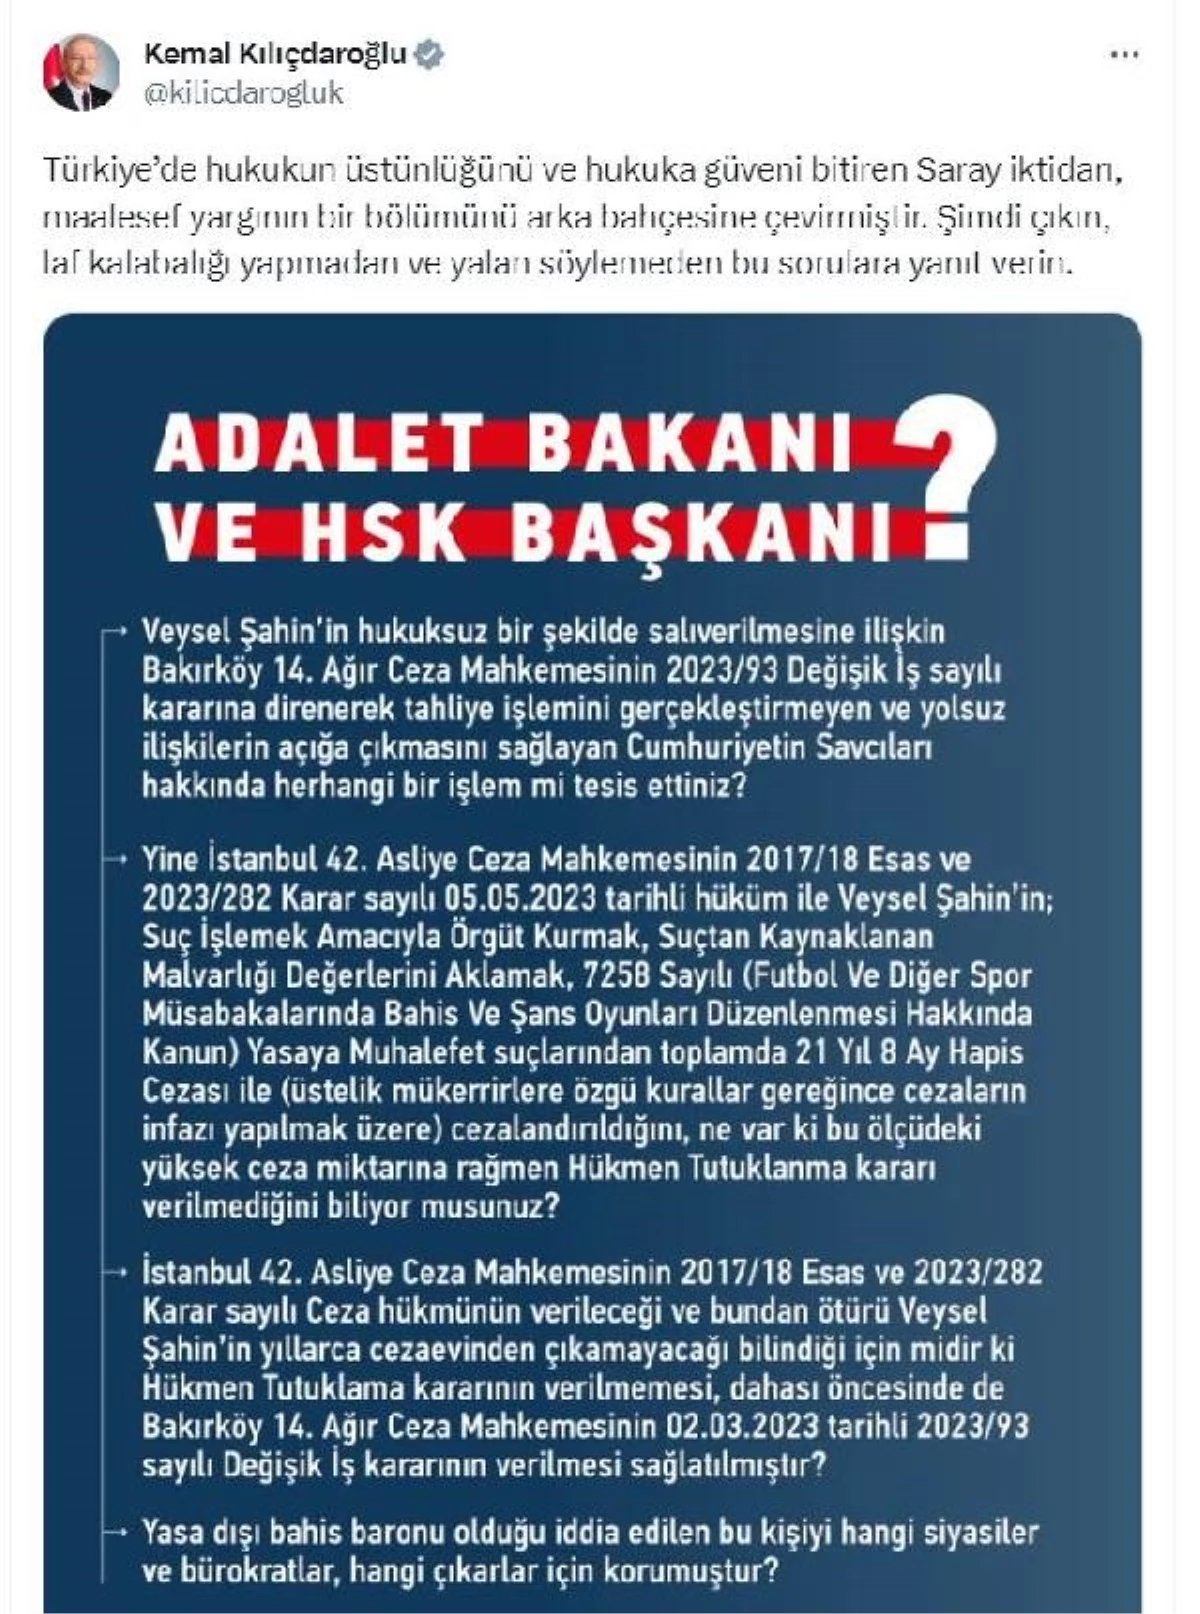 Kılıçdaroğlu, Adalet Bakanı Tunç\'a Veysel Şahin ile ilgili yeni sorular yöneltti